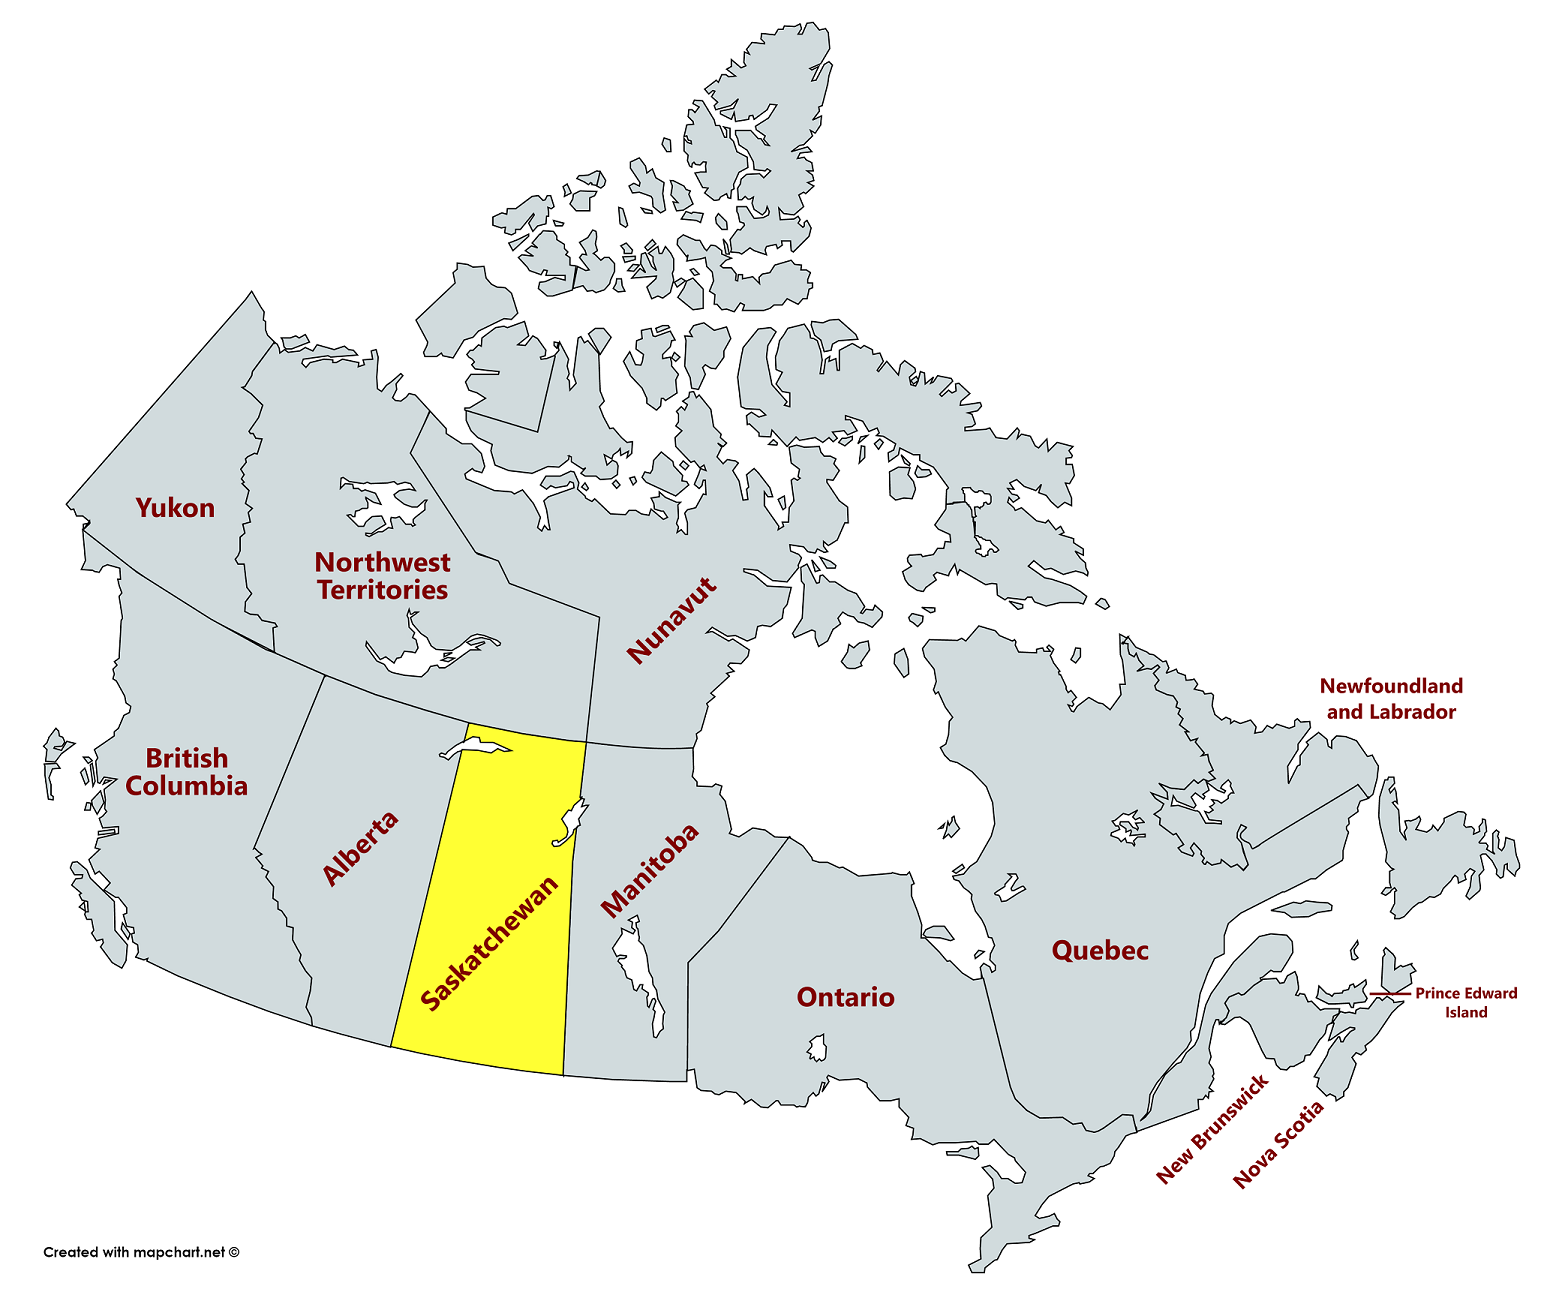 Иммиграция в канаду: 10 способов переехать на пмж в 2021 году